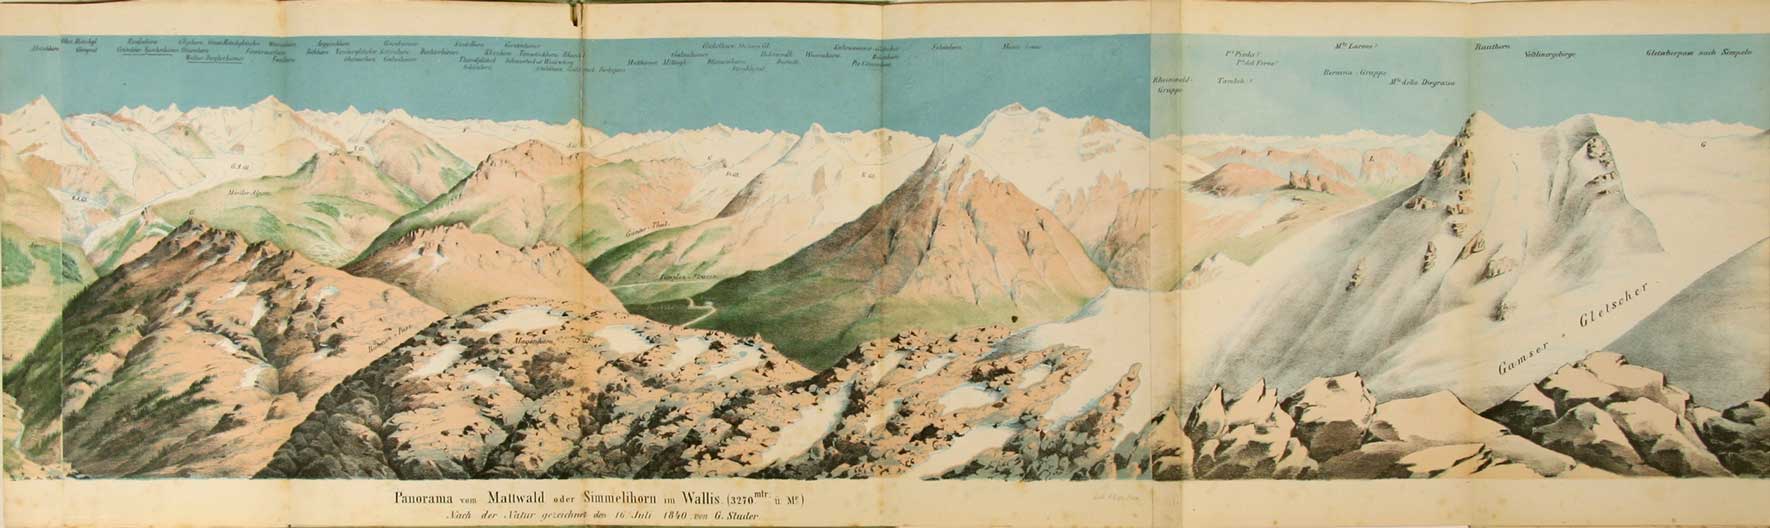  - Panorama vom Mattwald oder Simmelihorn im Wallis (3270 M. . Mr.). Nach der Natur gezeichnet den 16. Juli 1840 von G. Studer. Kolorierte Lithographie von F. Lips.